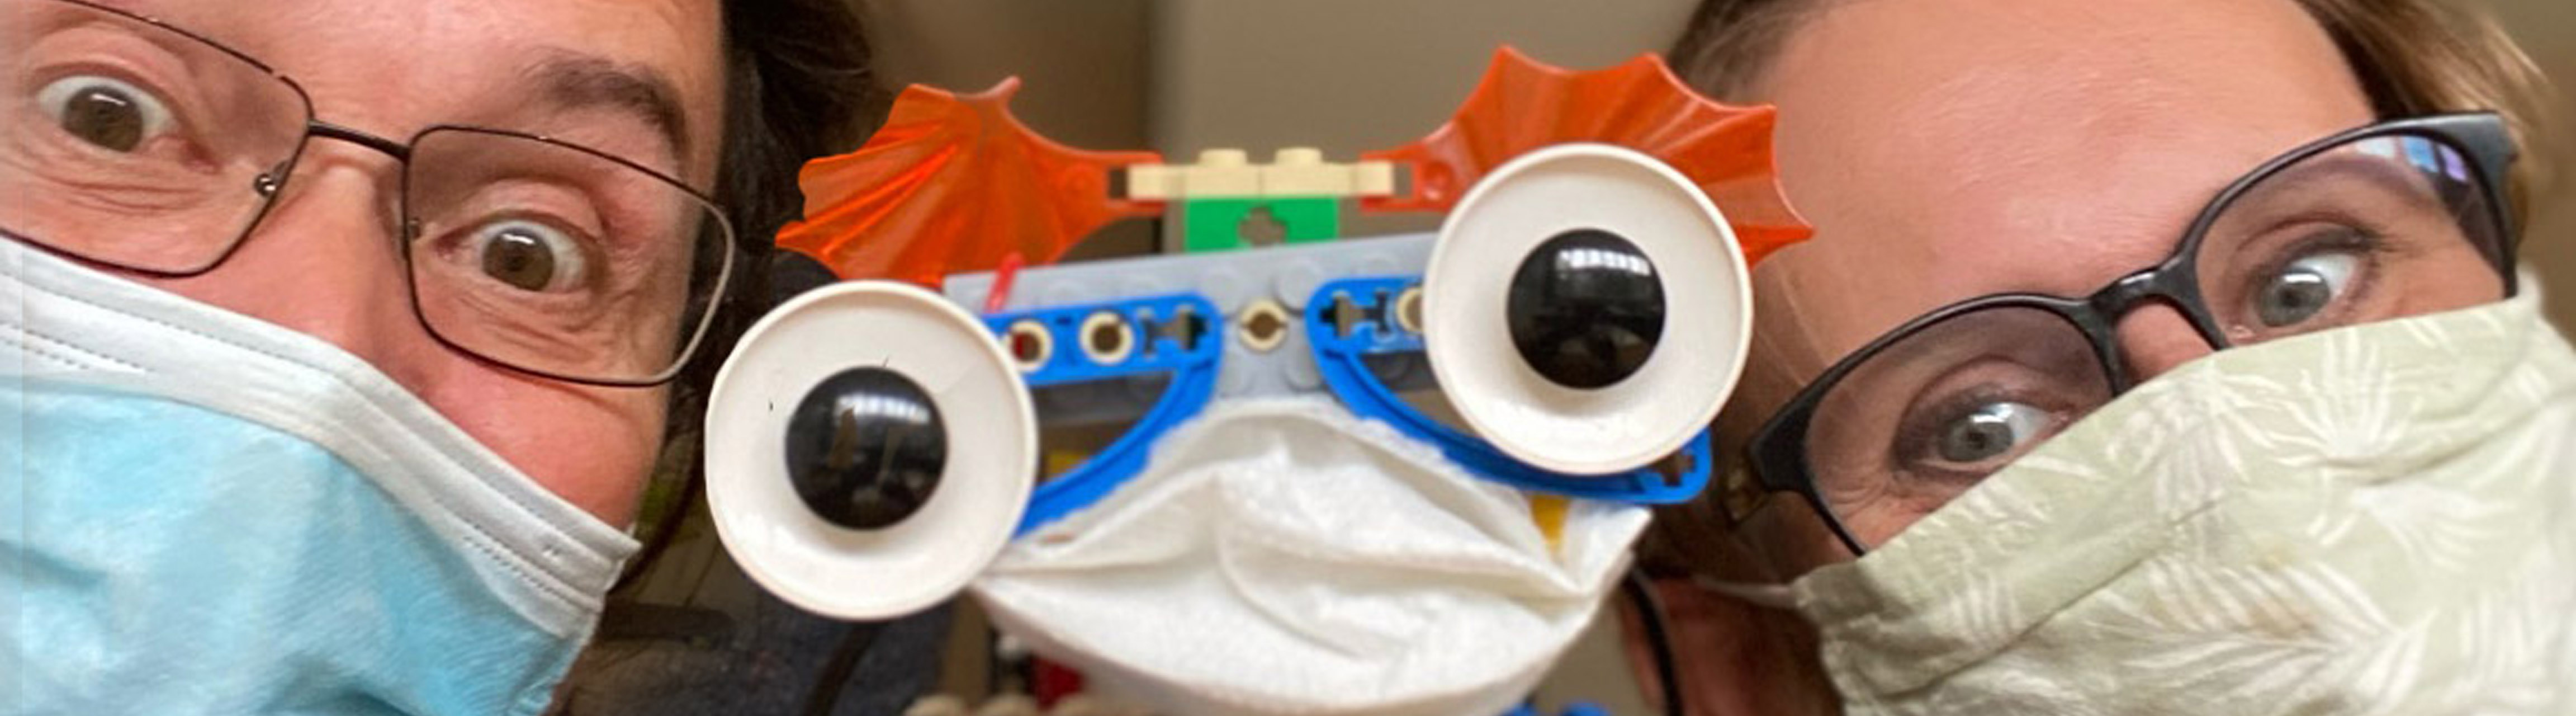 Nachaufnahme eines selbst gebauten Roboters mit Augen und Mund und Maske, Roboter Workshops, ZIMD